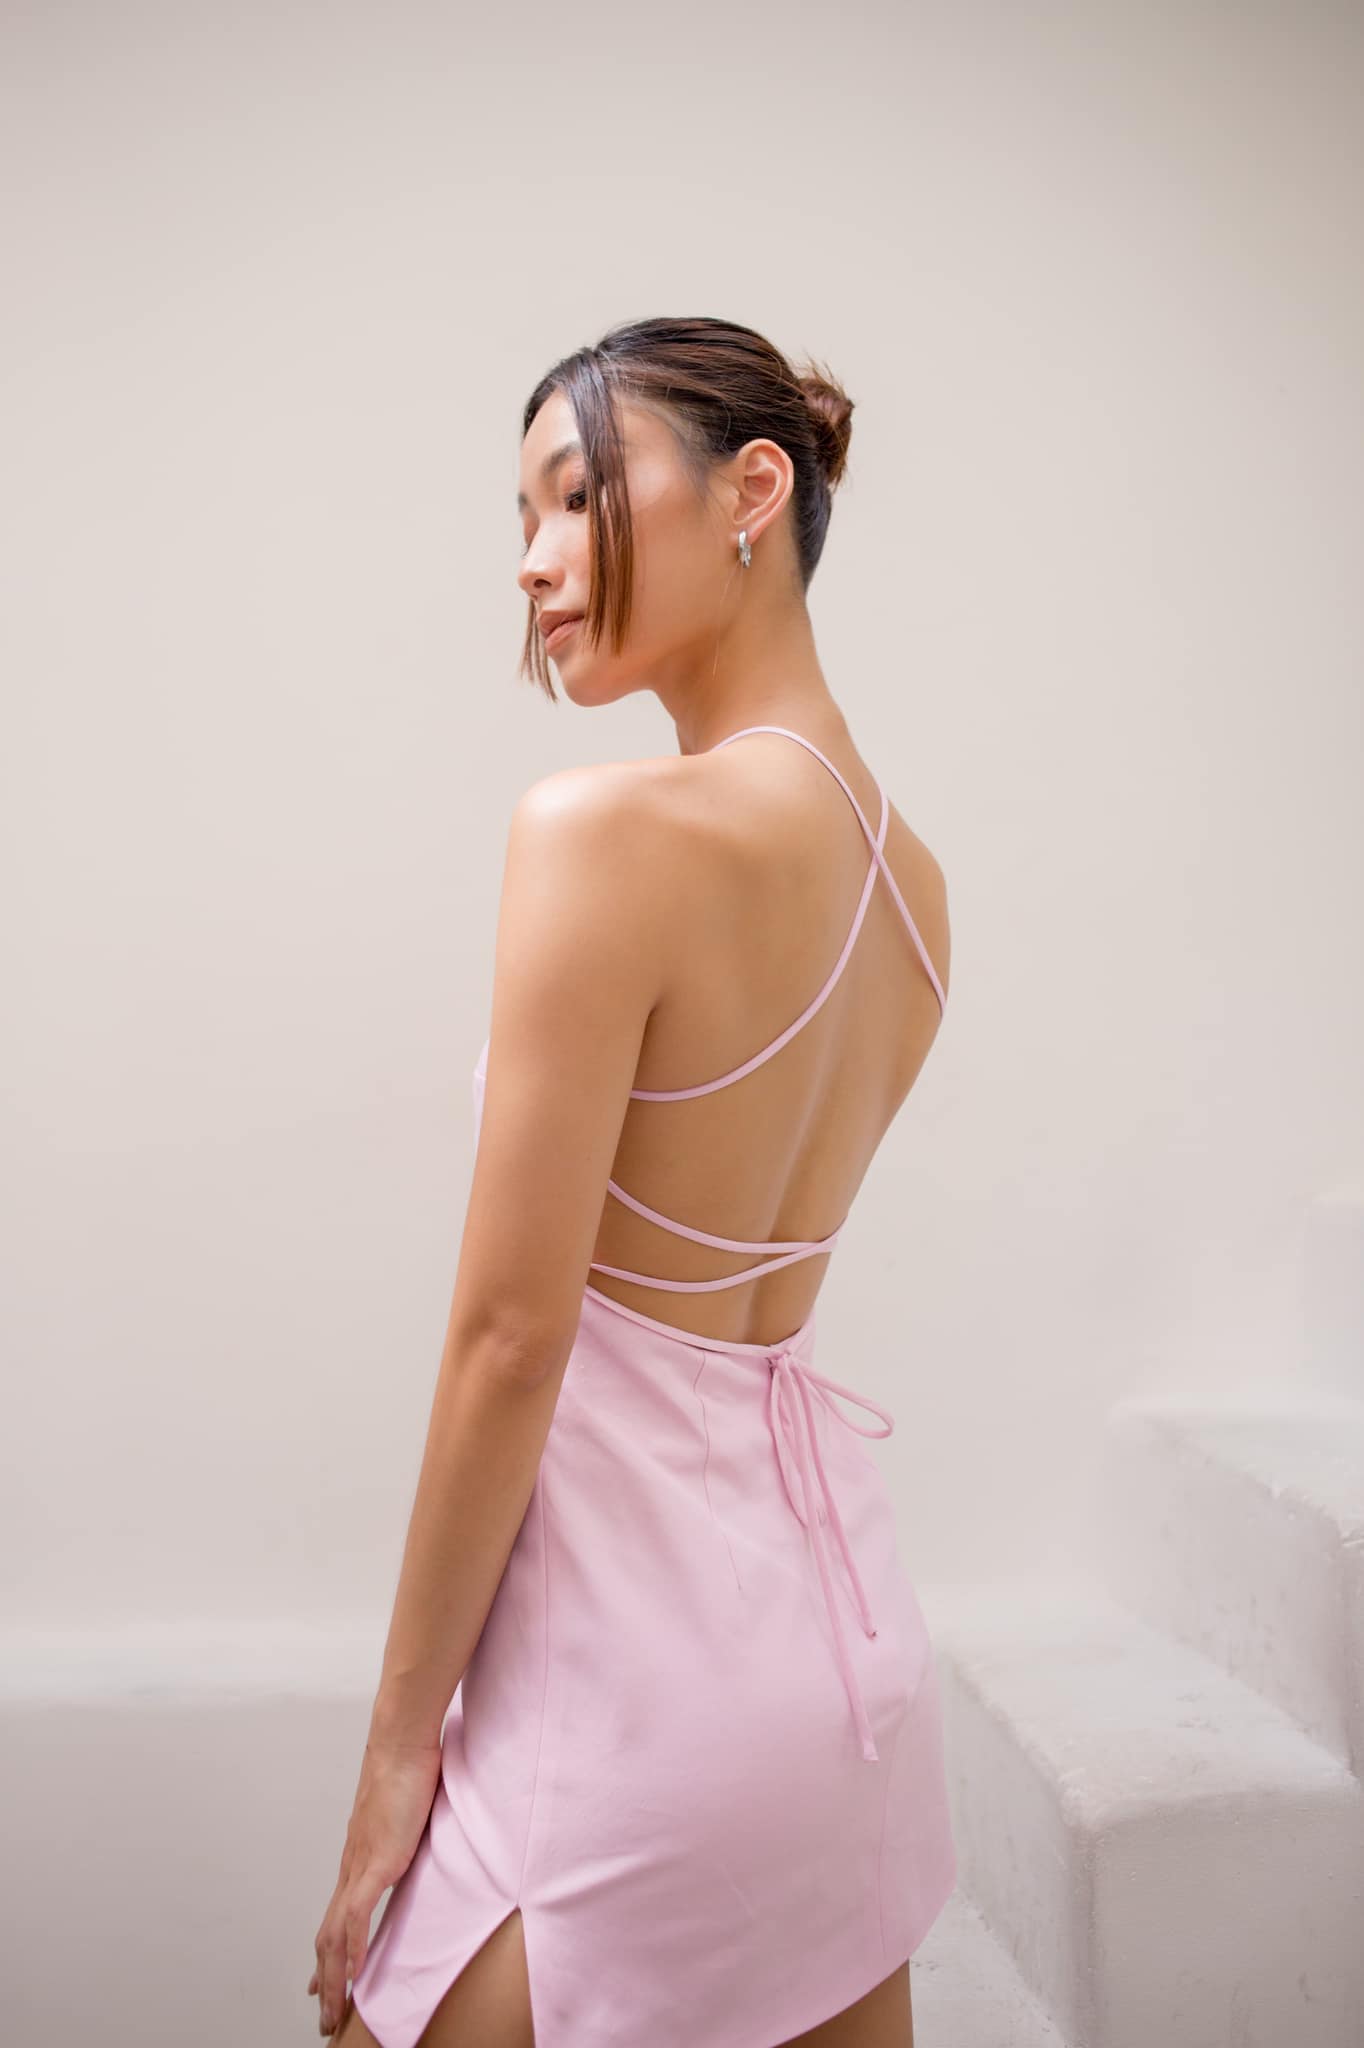 Tấm lưng trần gợi cảm cùng eo thon của Phương Trinh nổi bật khi cô diện thiết kế đầm lụa